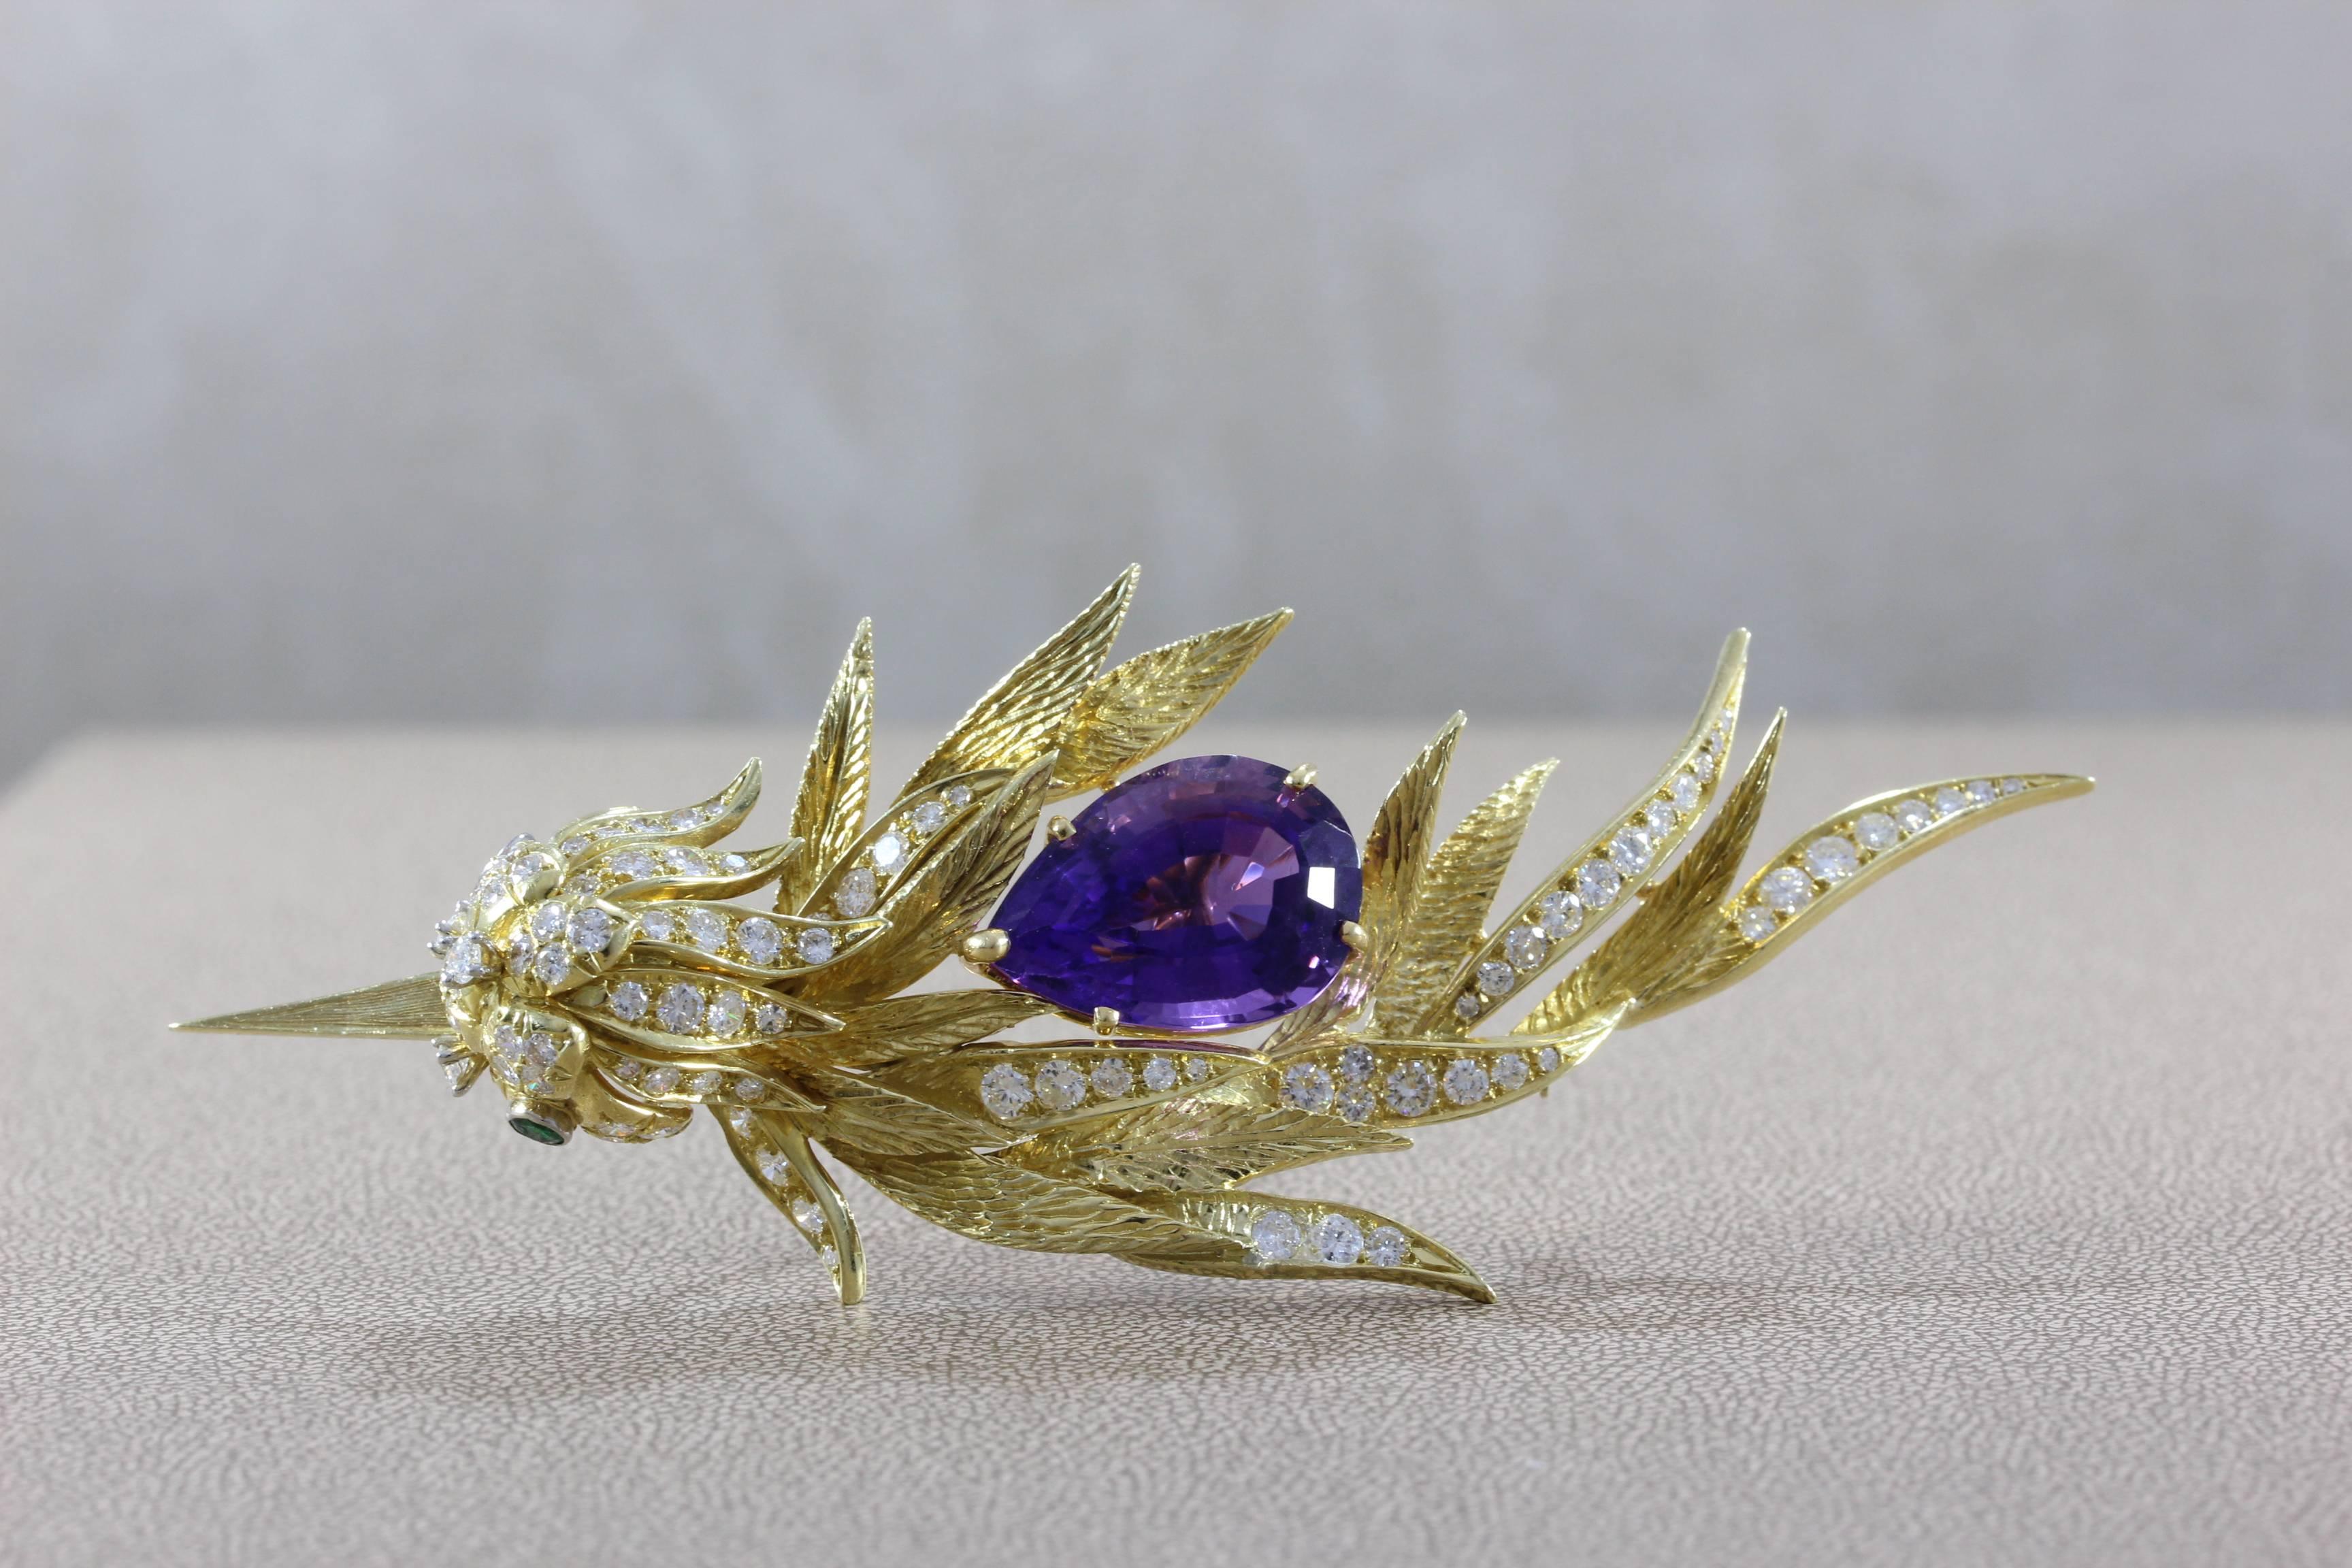 Œuvre d'art créative, cette broche présente une améthyste violette en forme de poire de 17,90. Les plumes et la tête de l'oiseau sont ornées de 4,07 carats de diamants sertis dans de l'or jaune 18 carats, qui accentuent l'améthyste et donnent du